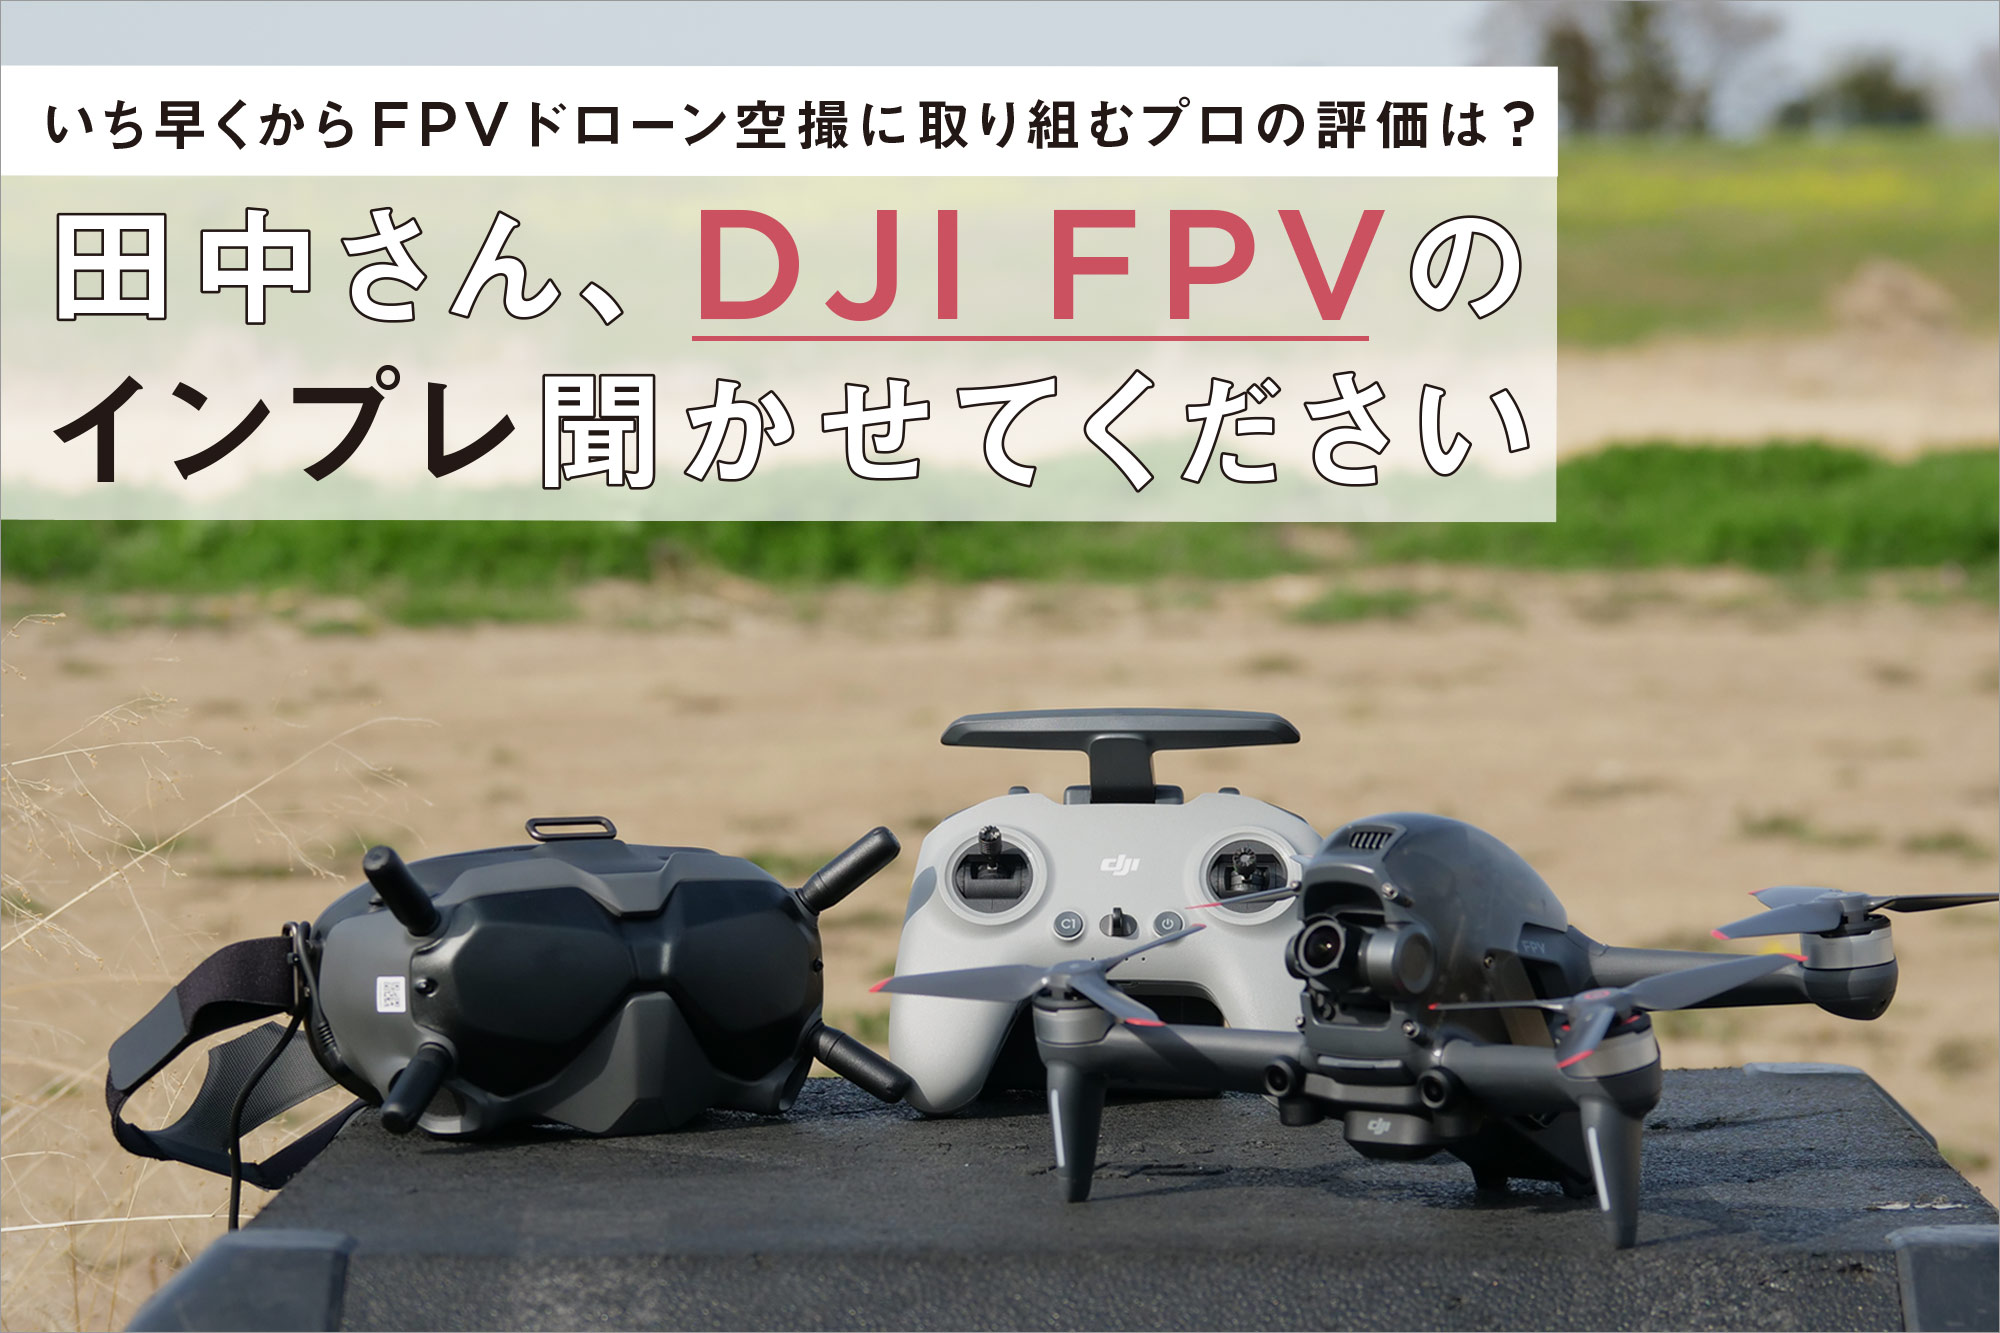 いち早くからFPVドローン空撮に取り組むプロの評価は? 田中さん、DJI FPVの インプレ聞かせてください | VIDEO SALON